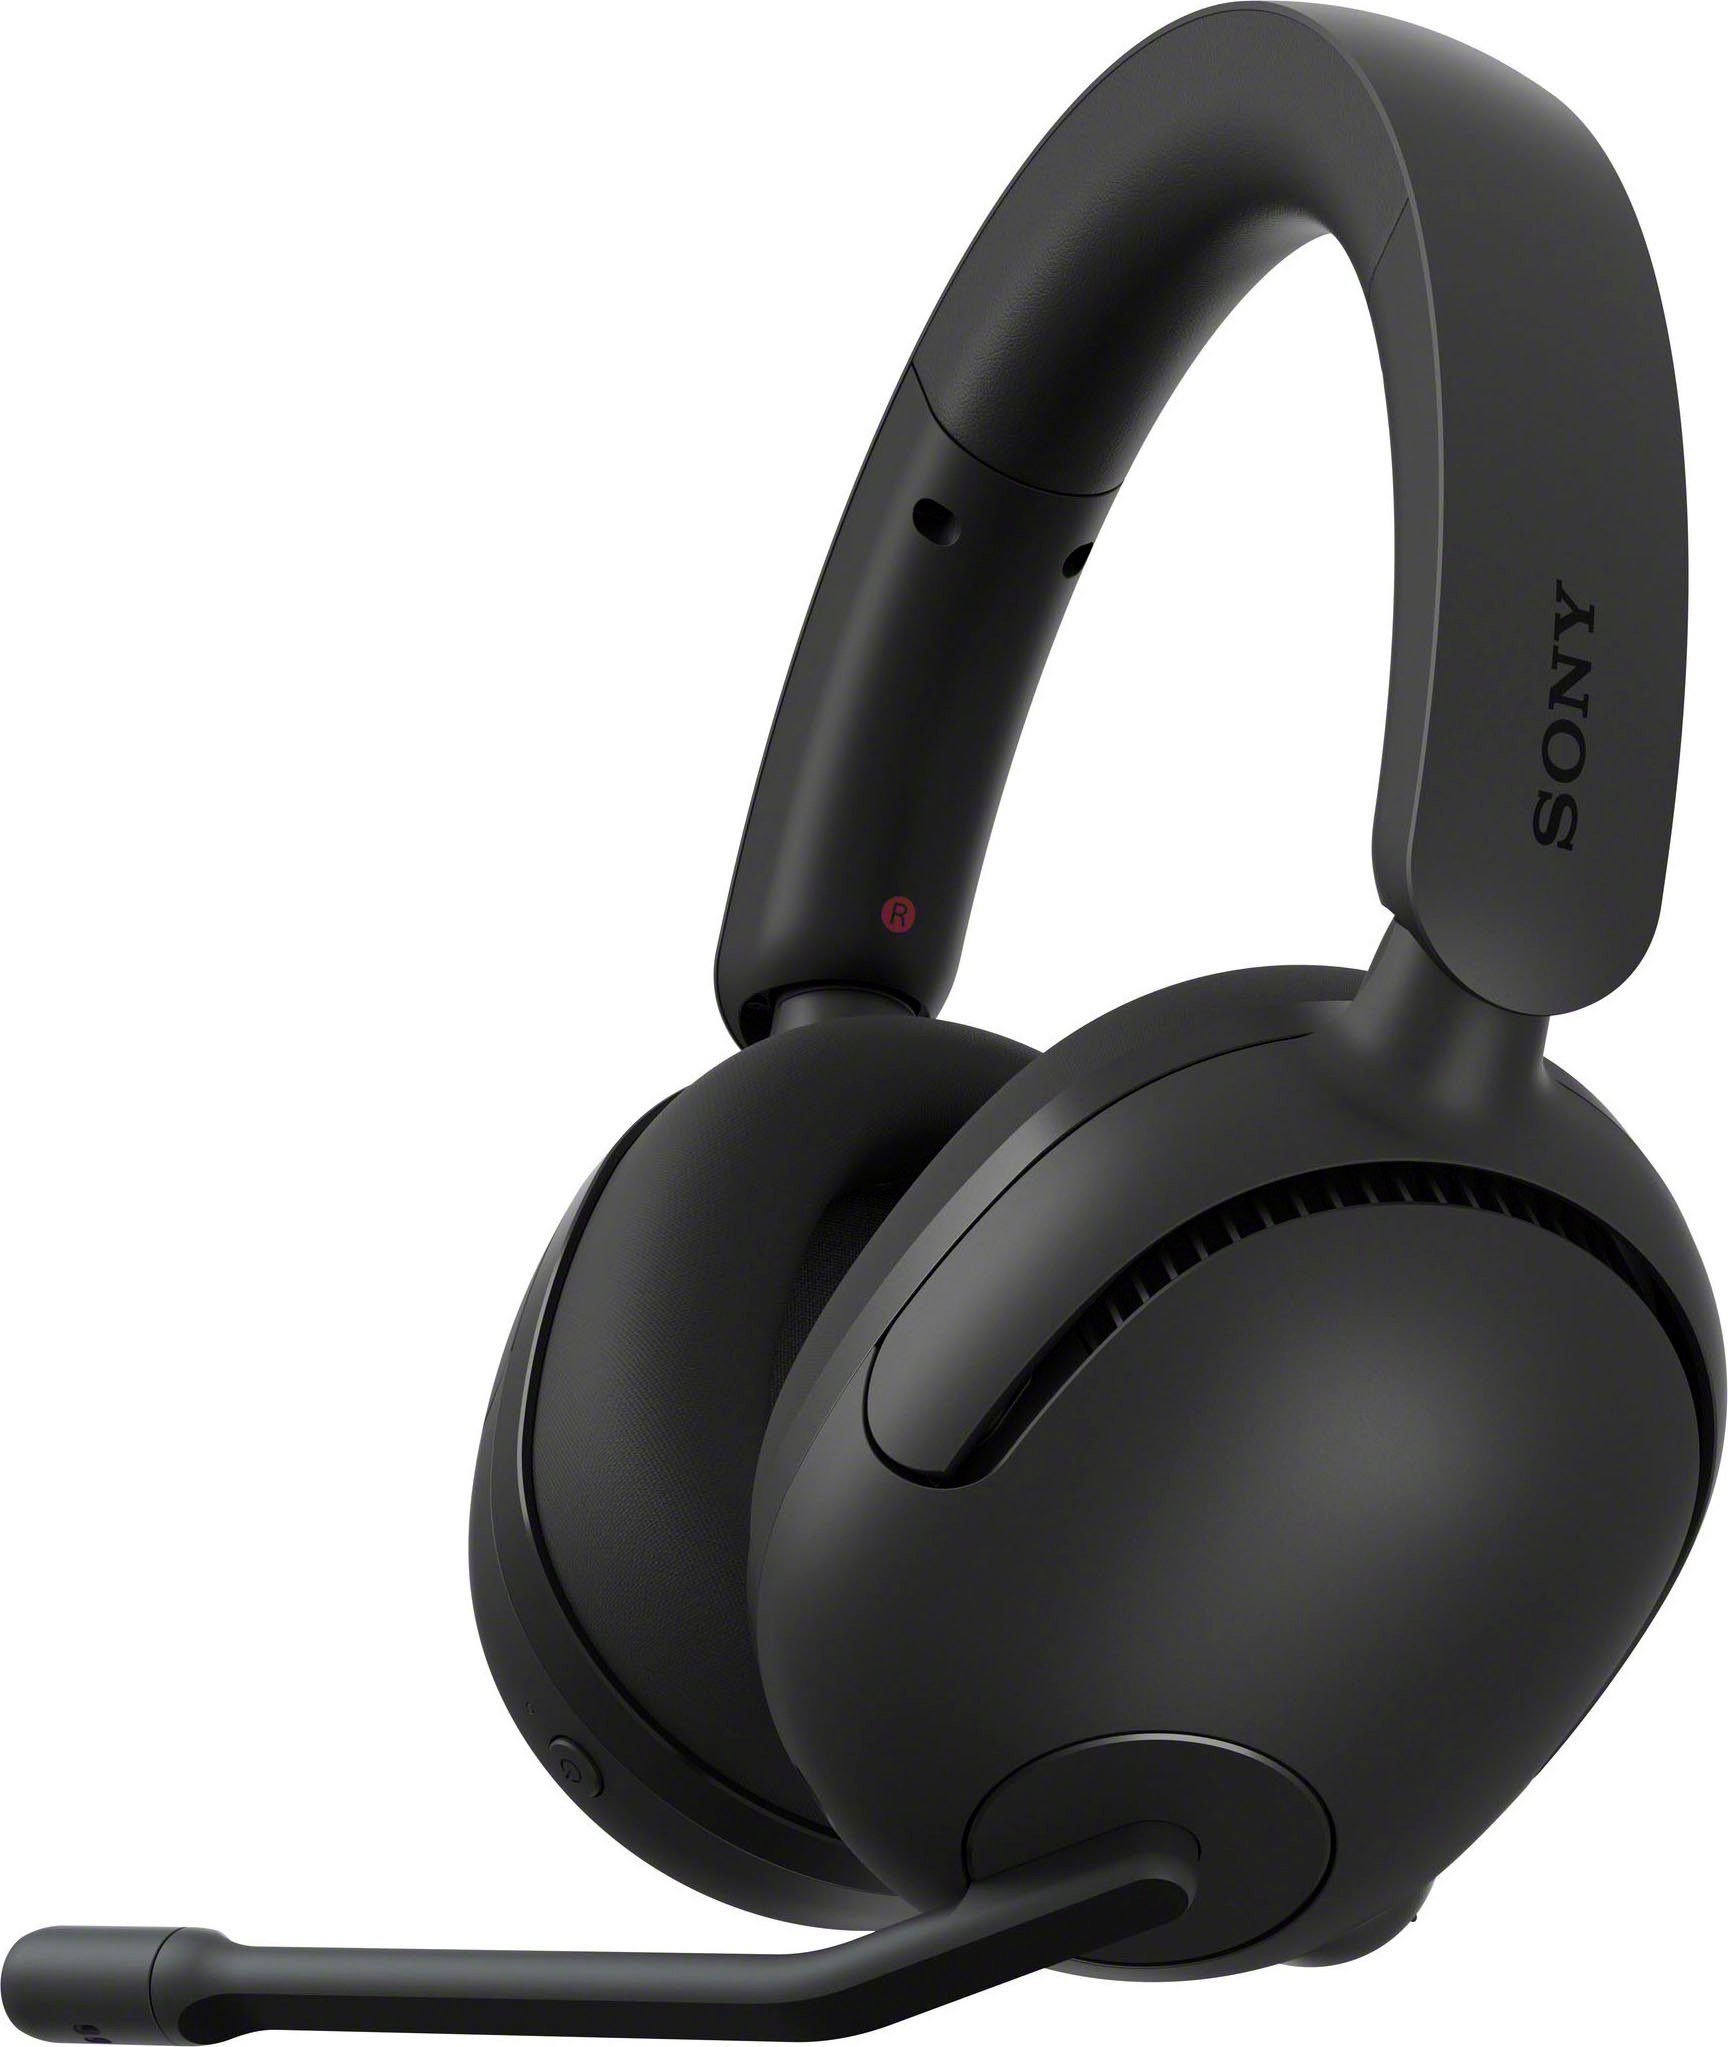 Sony INZONE H5 Gaming-Headset (Rauschunterdrückung, SpatialSound, AI) geringe 28Std mit Mic Latenz, schwarz Akkulaufzeit, Bluetooth, 360